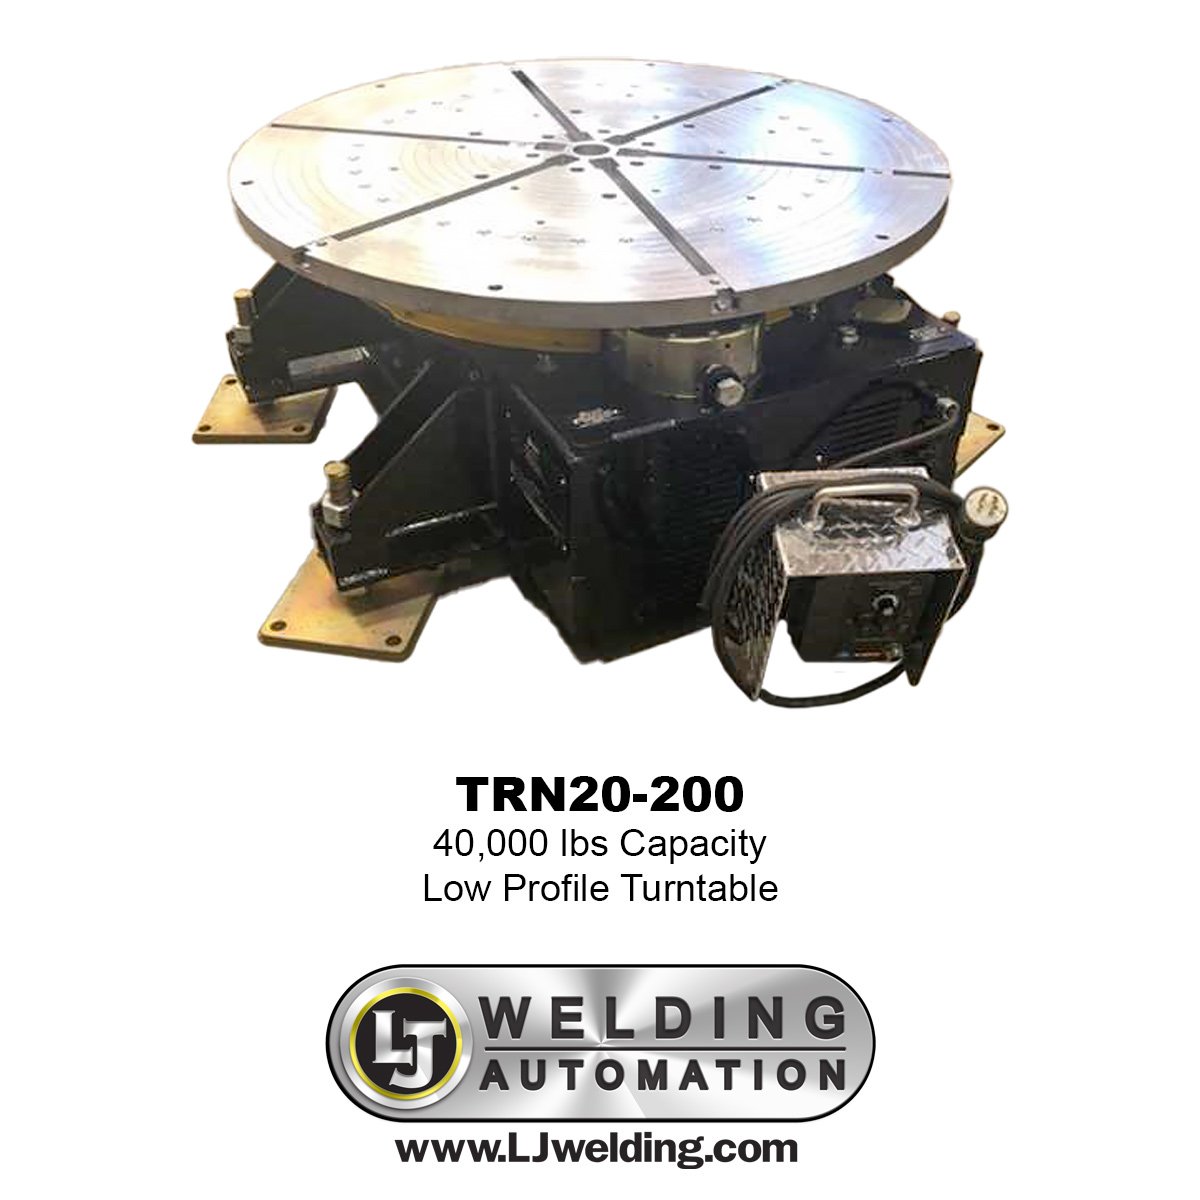 TRN20-200 welding turntables